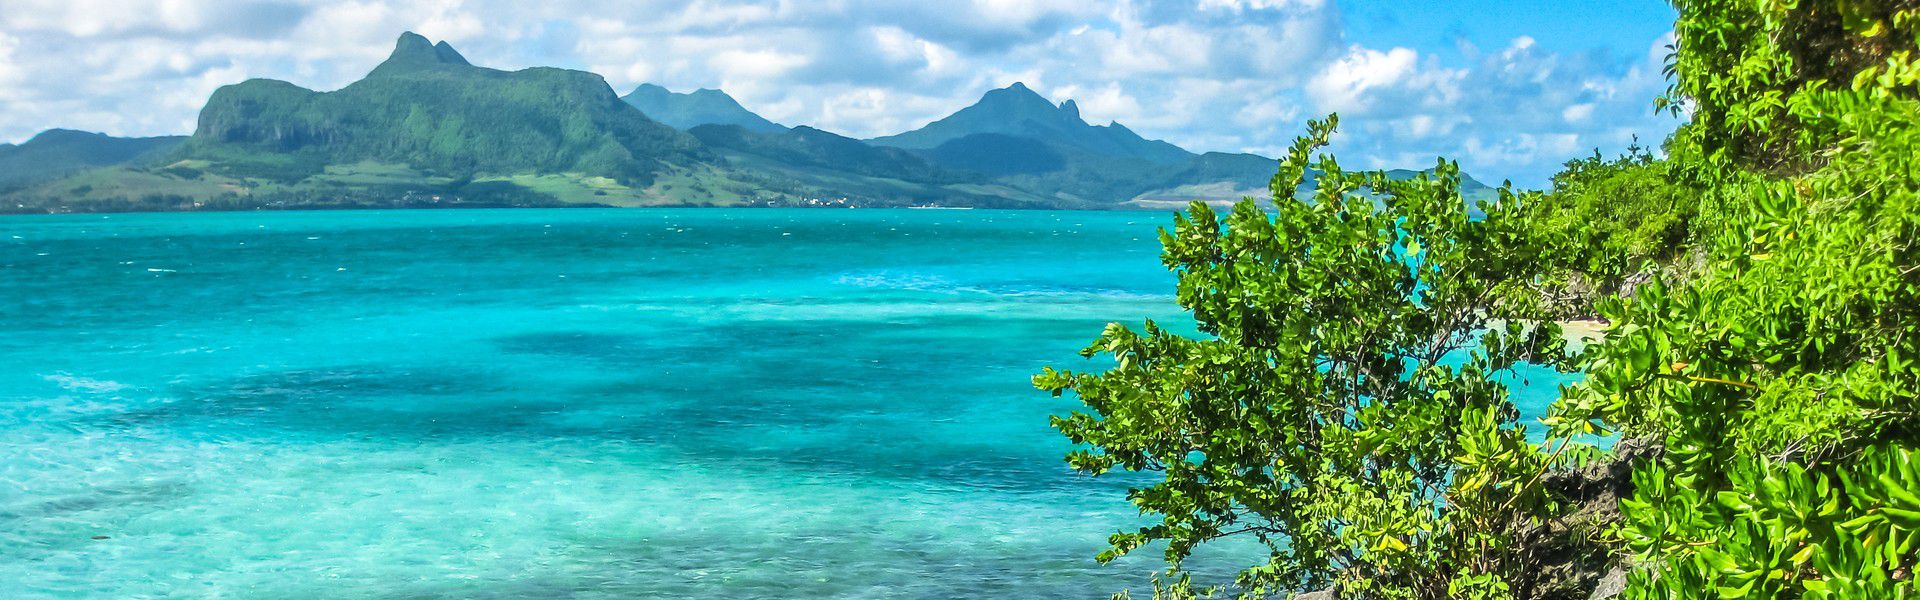 Dans la baie de Mahébourg, à environ 850 mètres au large de la côte sud-est de l'île Maurice, se trouve un îlot unique en son genre, qui a été déclaré réserve naturelle en 1965.  Il a été préservé par la 'Mauritius Wildlife Foundation', c'est l'île aux Aigrettes. Suivez-nous pour profiter d'une évasion absolument inoubliable.